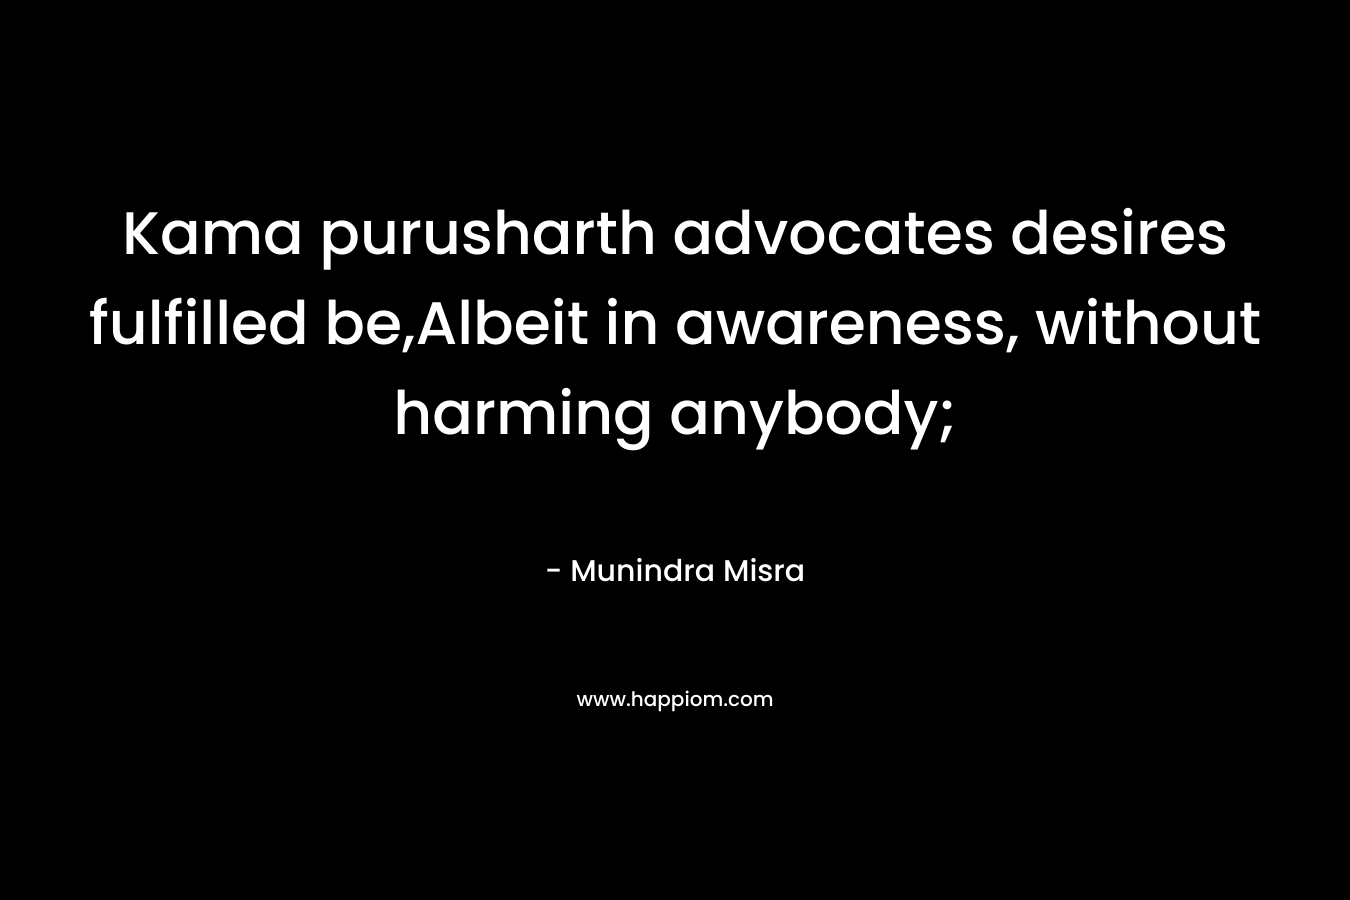 Kama purusharth advocates desires fulfilled be,Albeit in awareness, without harming anybody; – Munindra Misra